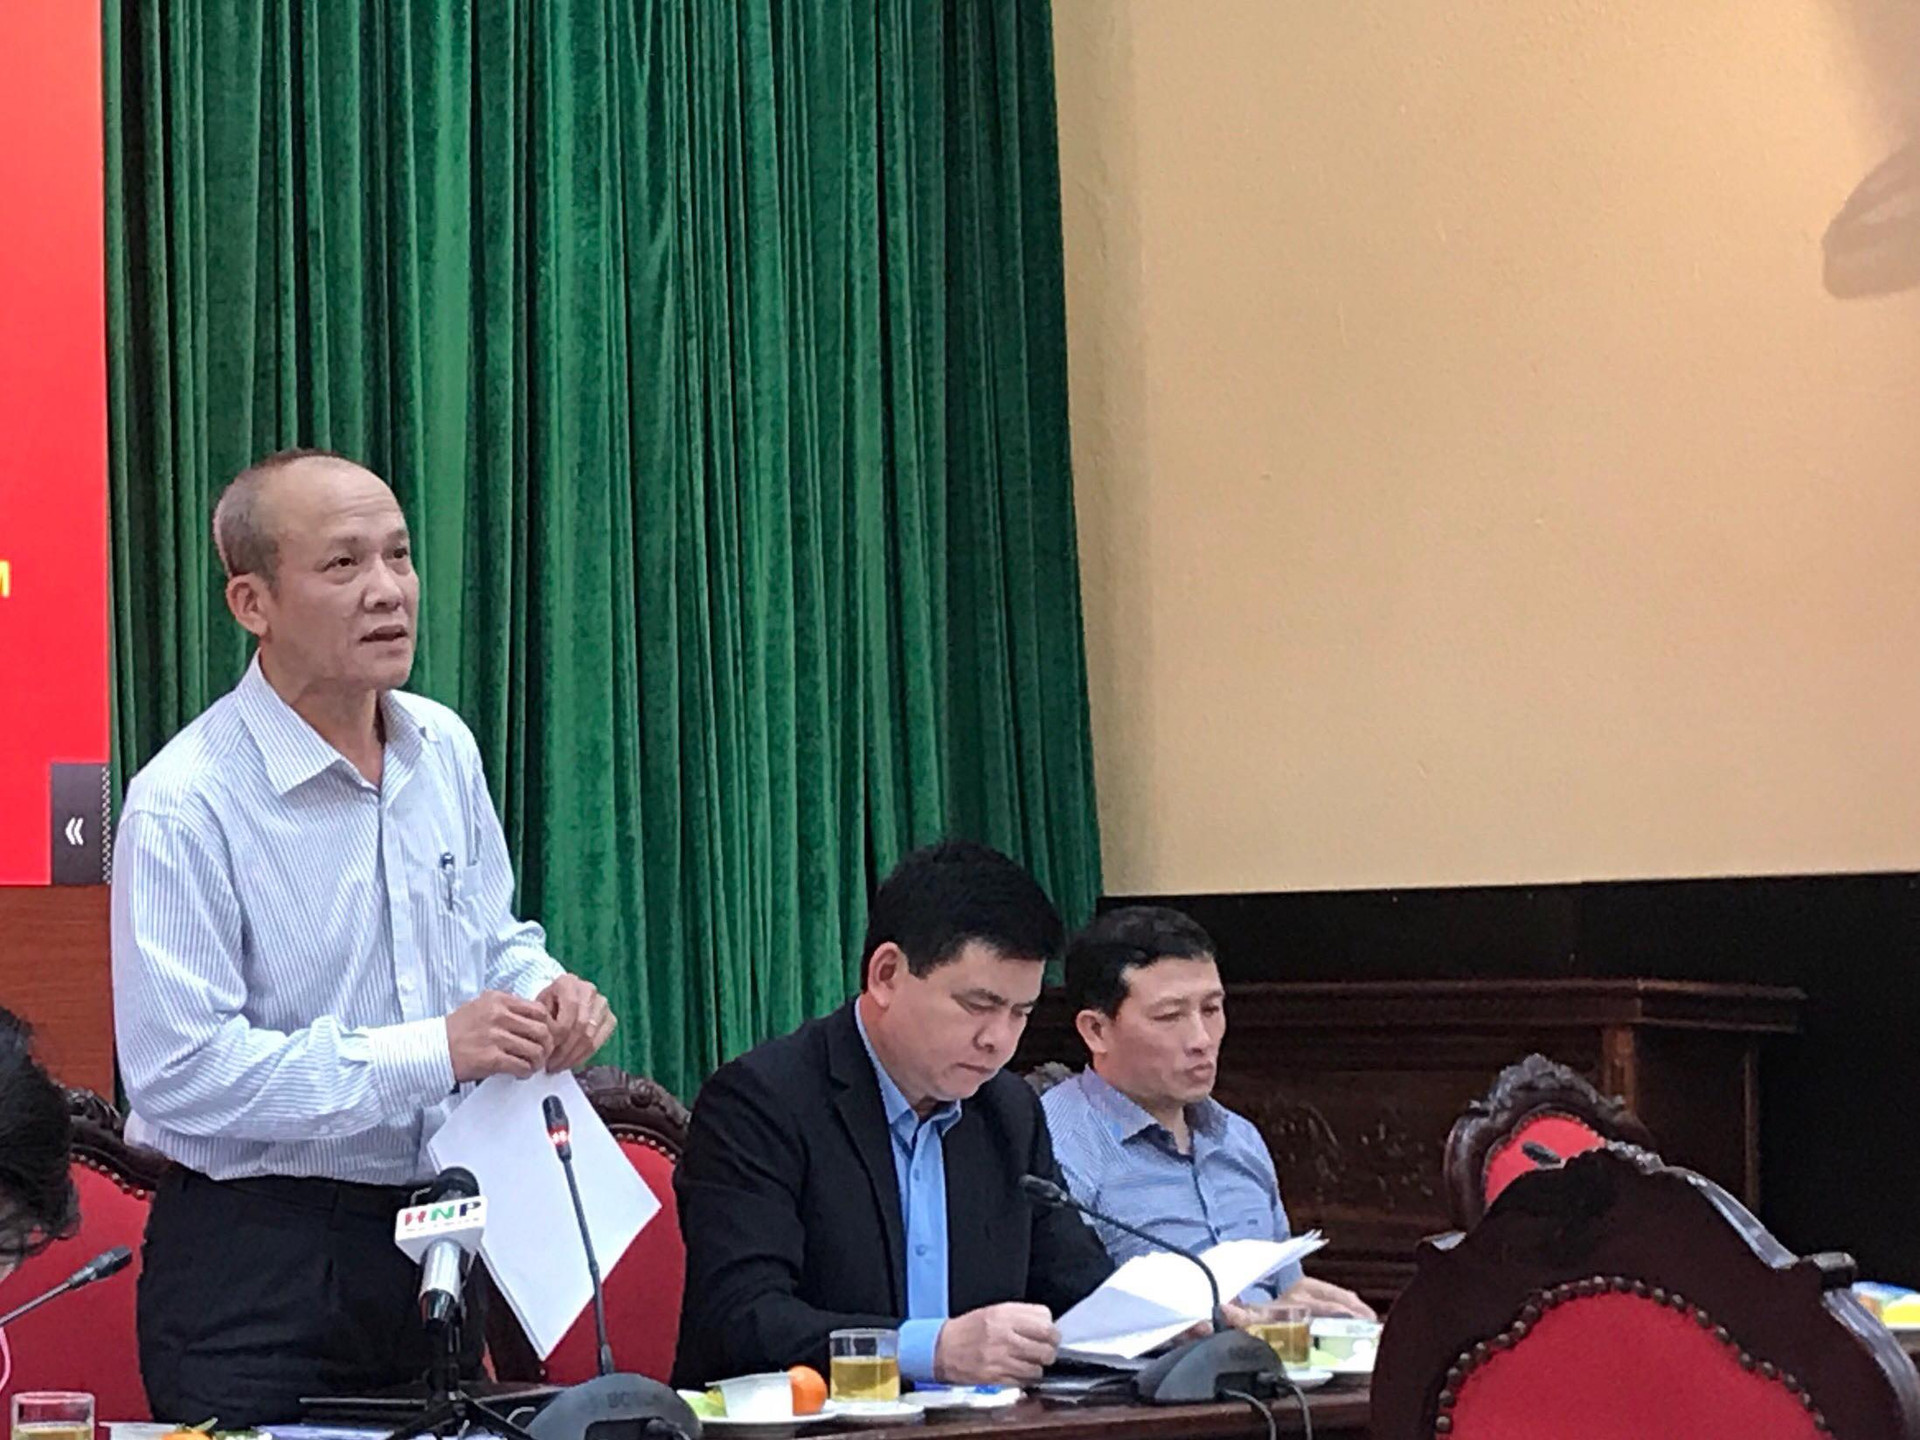 Hà Nội: Tai nạn giao thông giảm trên cả 3 tiêu chí trong dịp Tết Nguyên Đán 2019